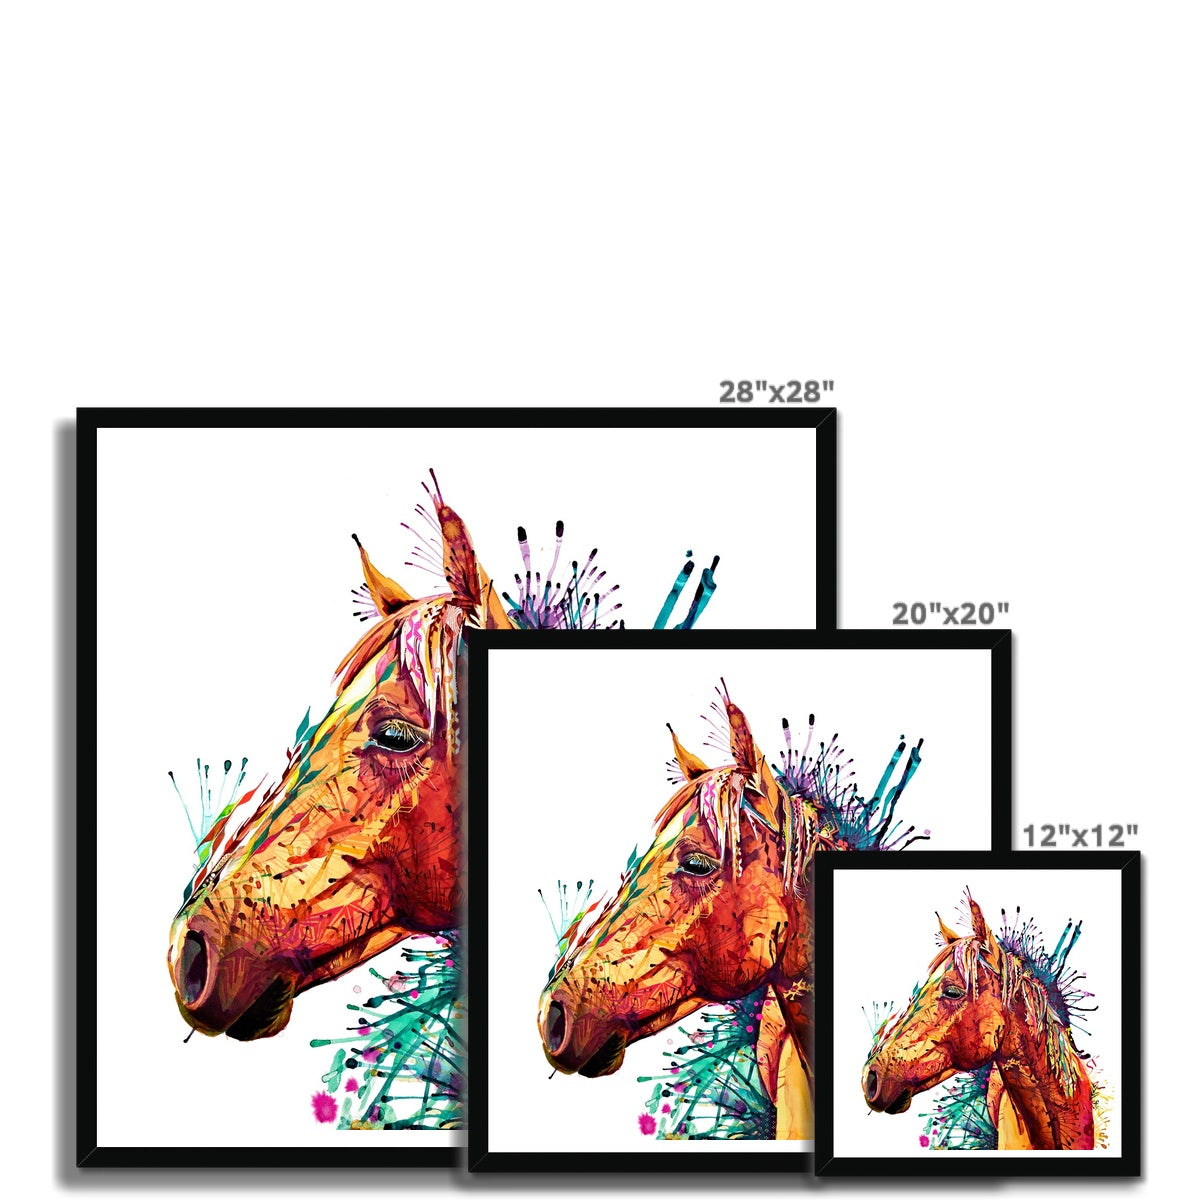 Margaret the Horse Framed Print